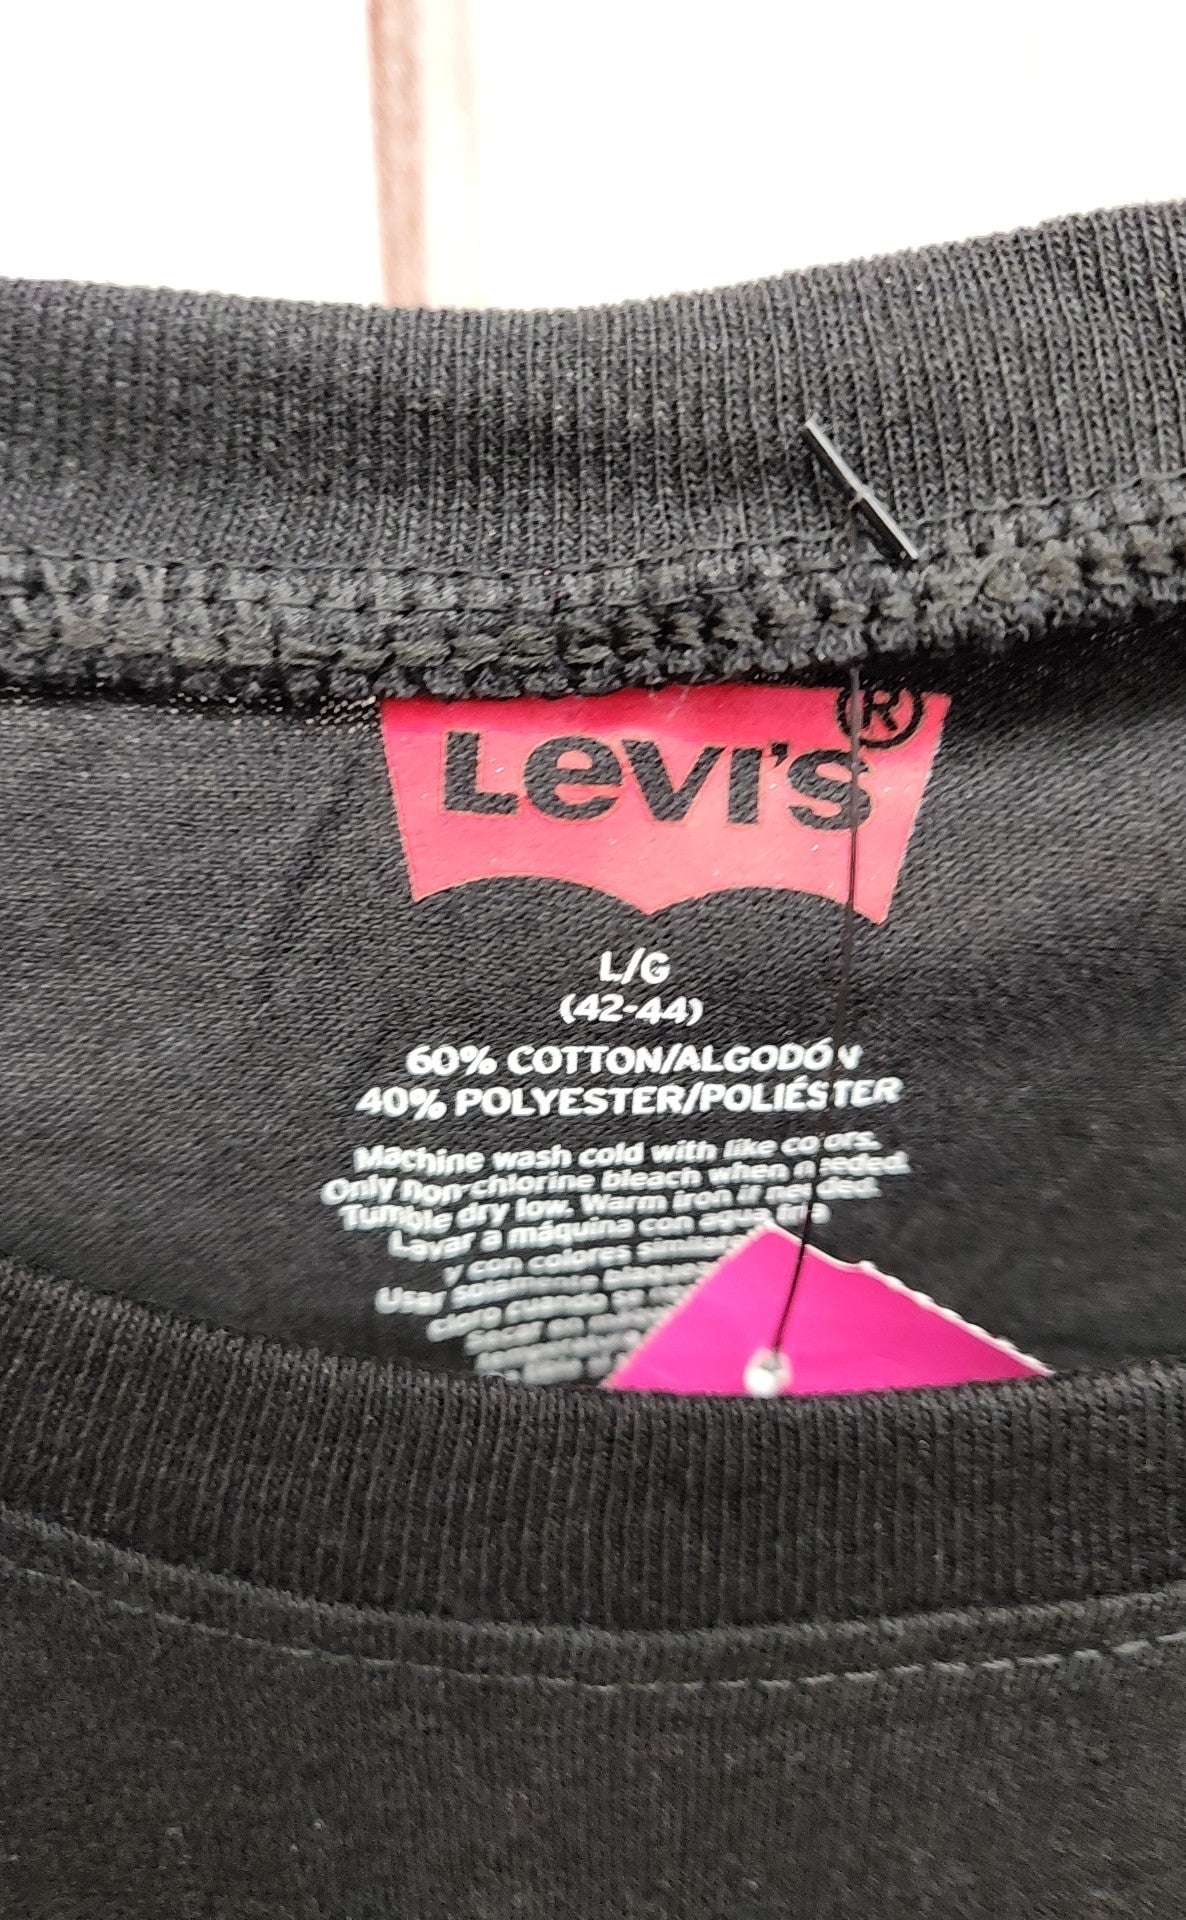 Levis Men's Size L Black Shirt